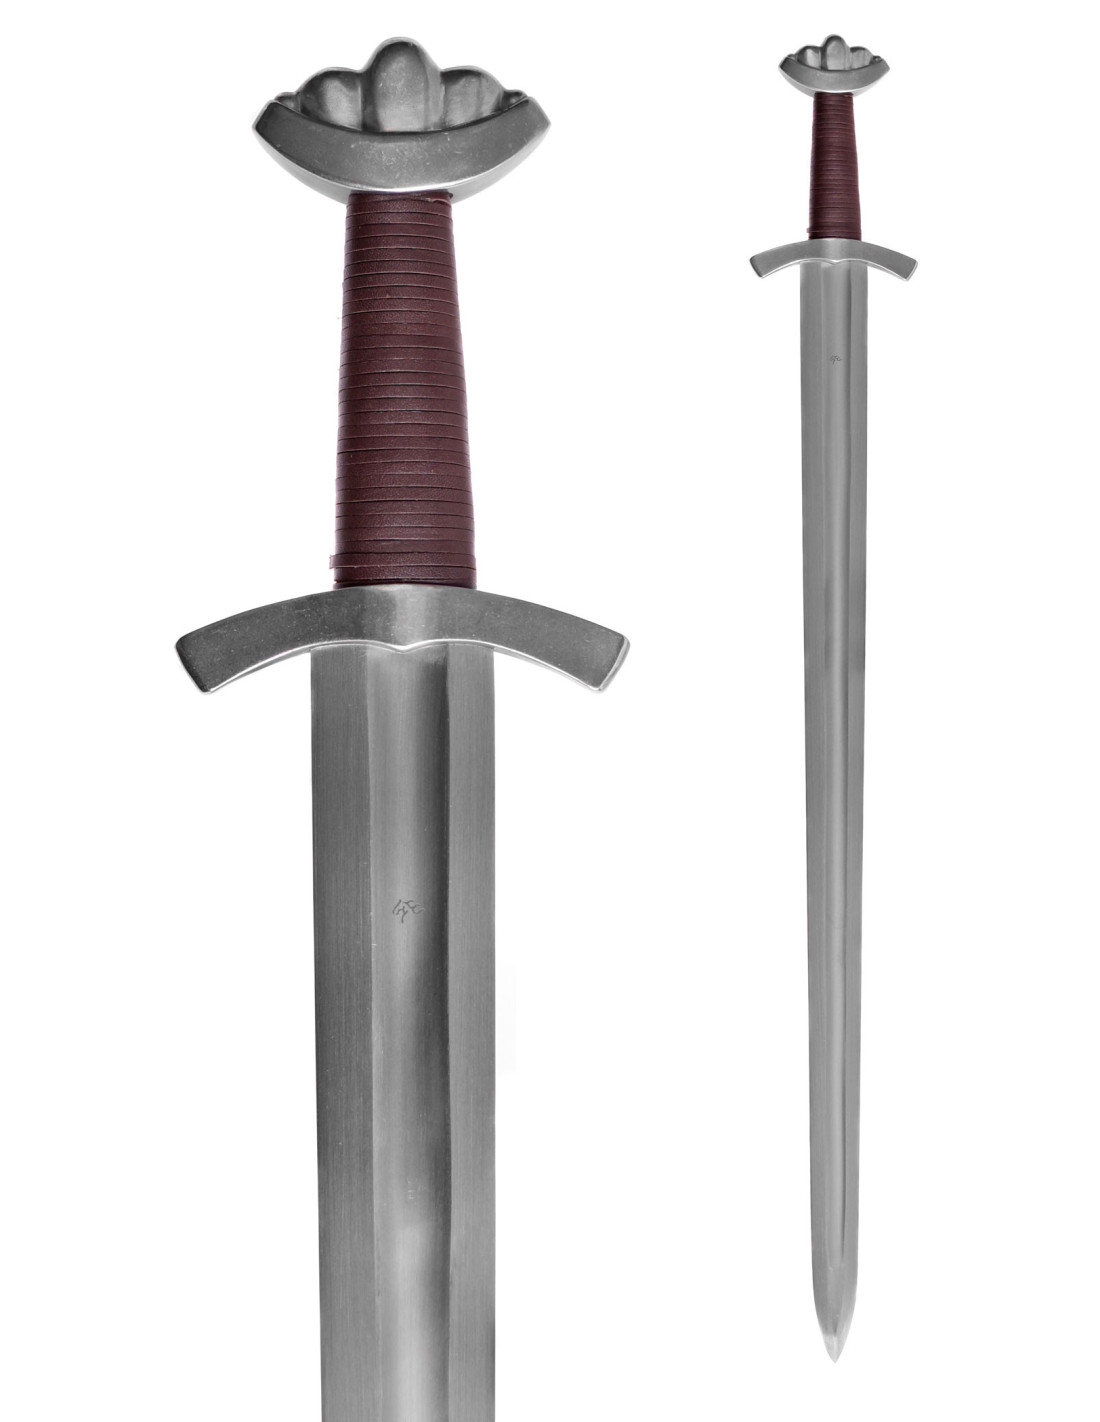 Espada Vikinga látex ⚔️ Tienda-Medieval